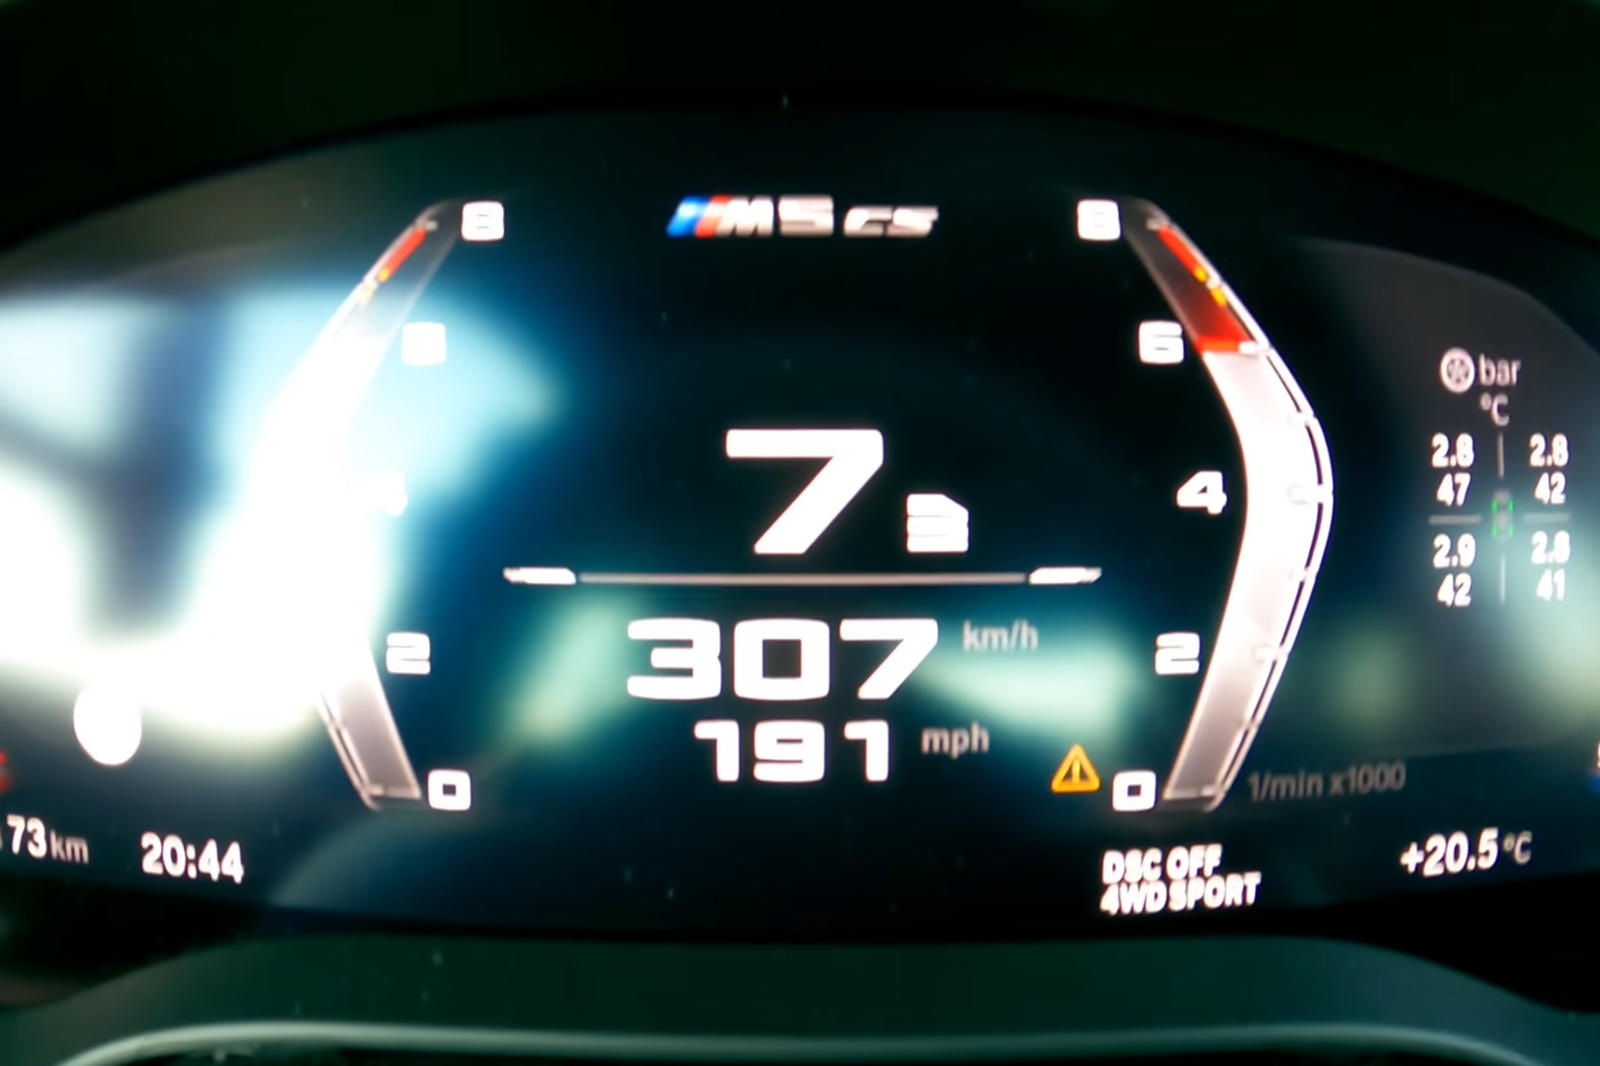 Официально BMW утверждает, что M5 CS разгонится до 100 км/ч за 2,9 секунды до максимальной скорости 305 км/ч. Чтобы проверить, верны ли эти утверждения, M5 CS был выпущен на немецкий автобан, перед которым был проведен быстрый тест на ускорение.